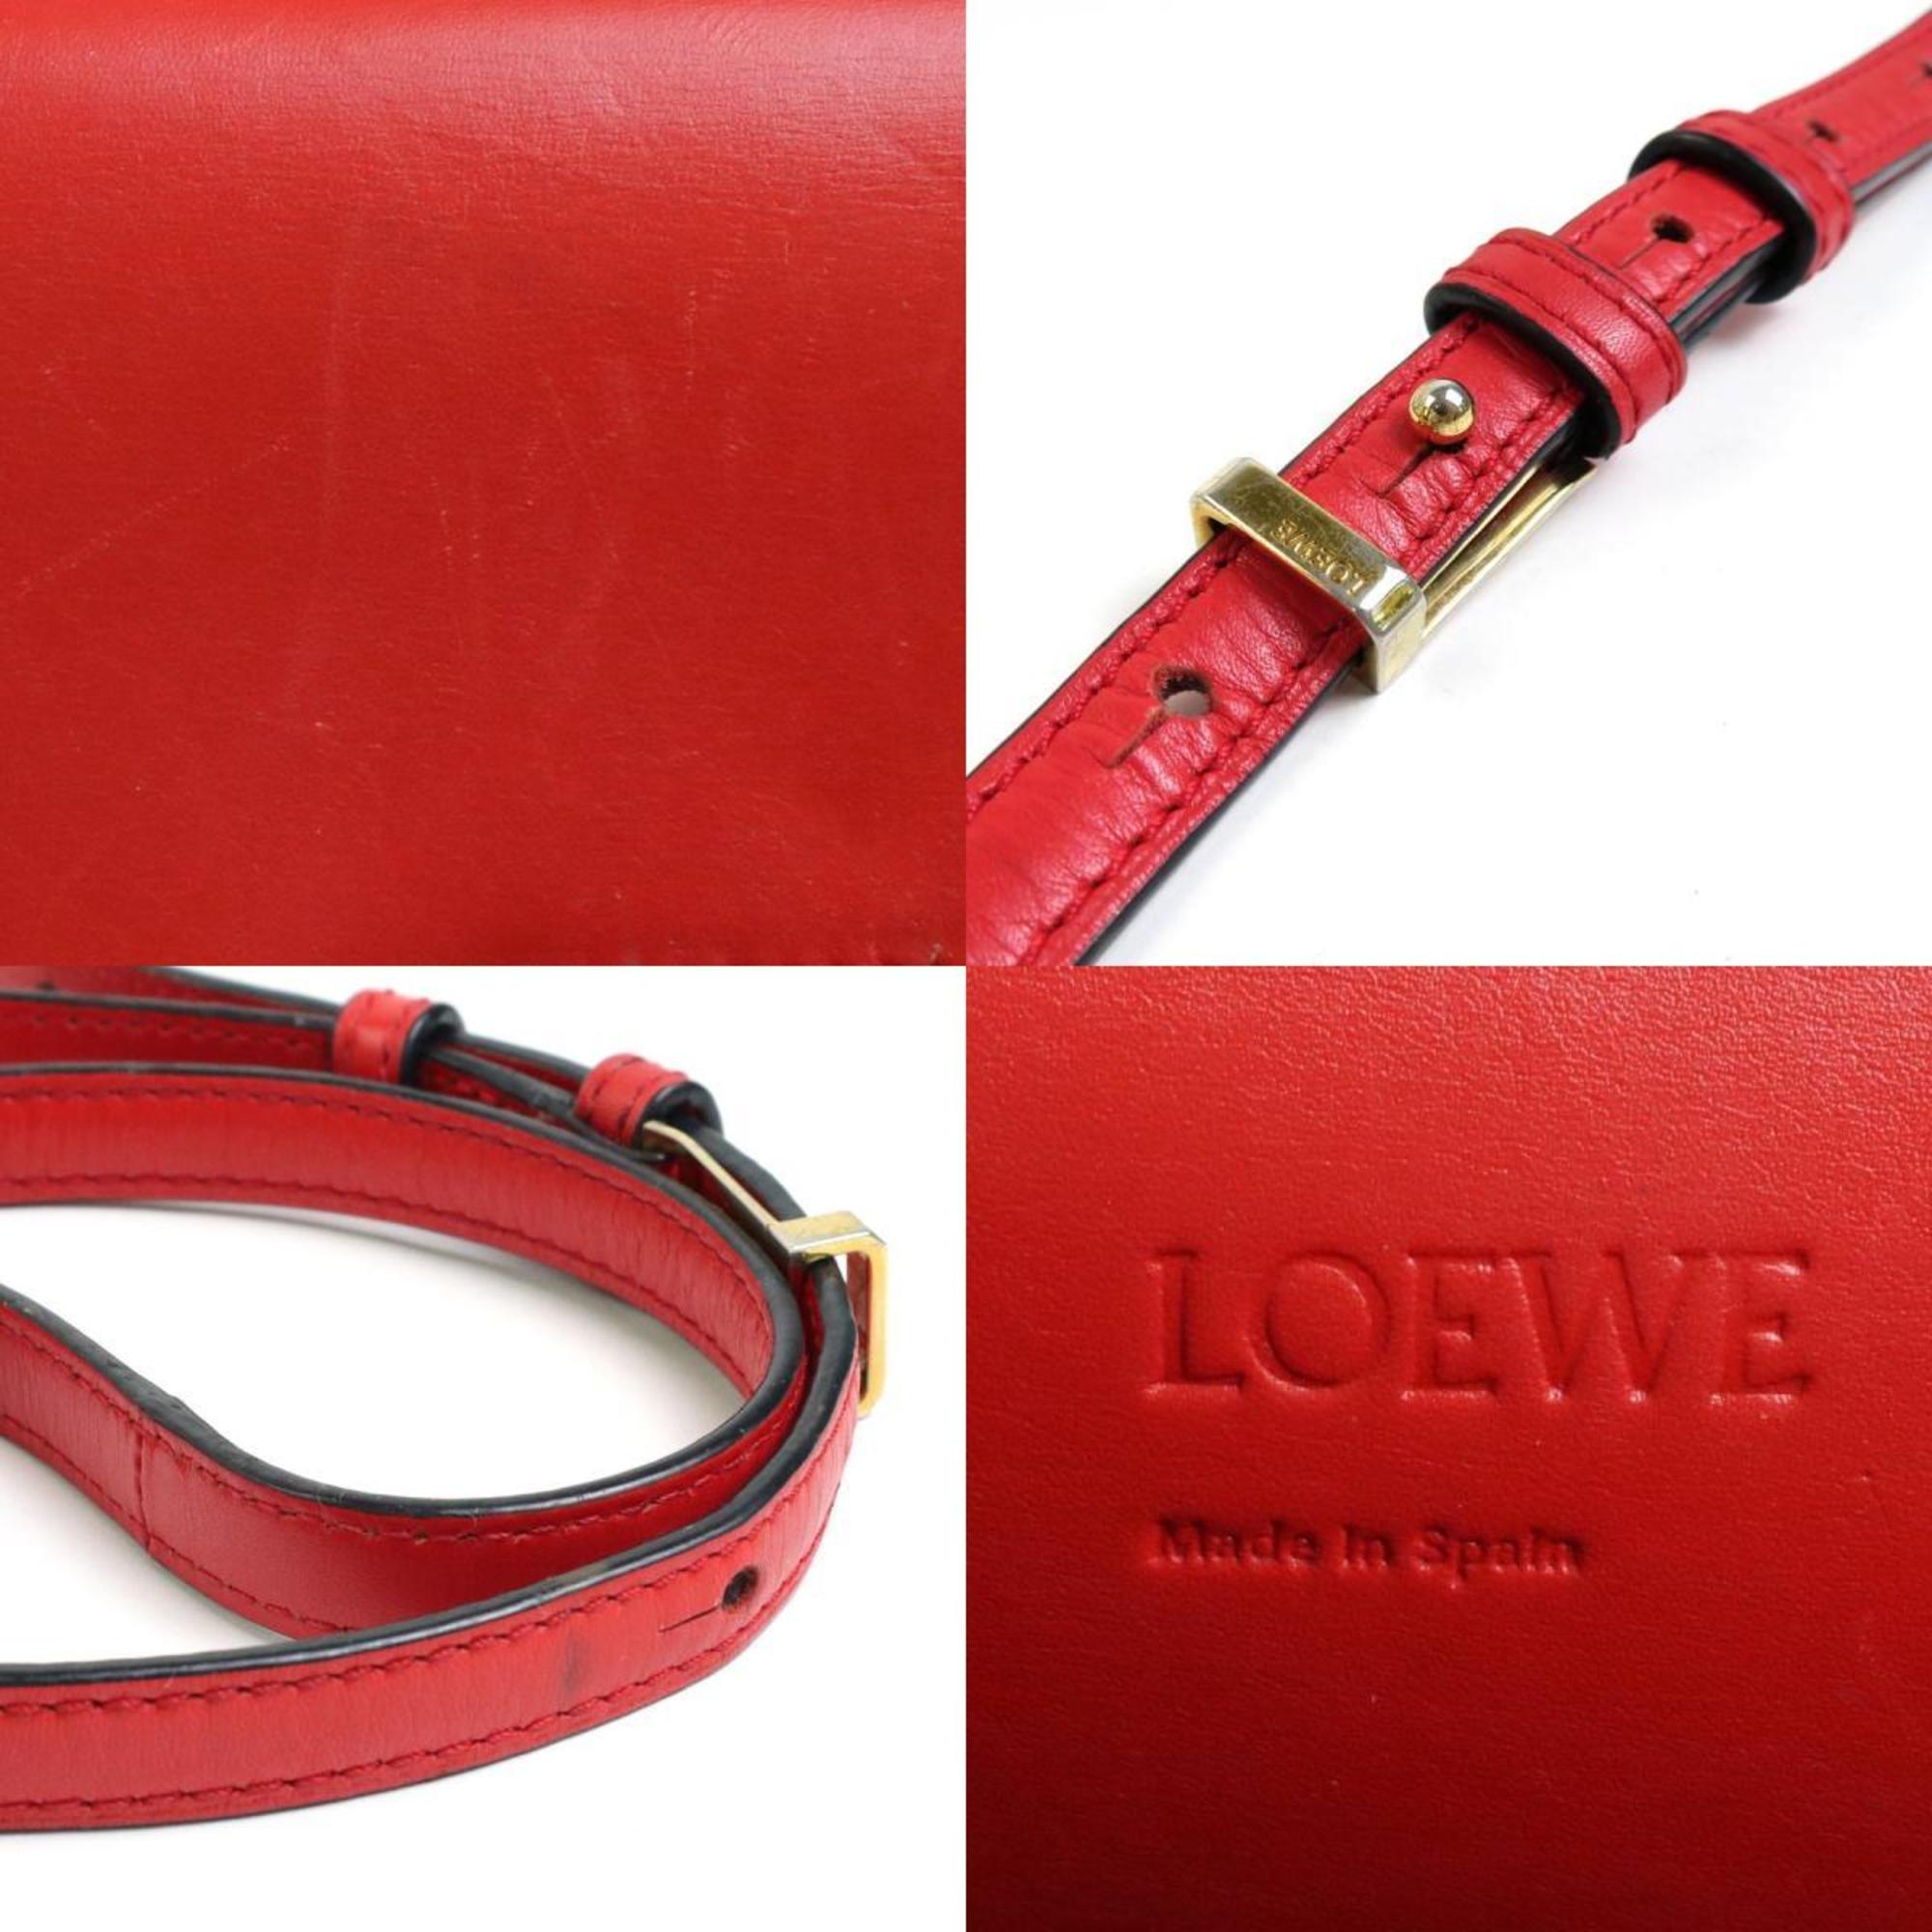 Loewe LOEWE diagonal shoulder bag Barcelona leather red gold ladies